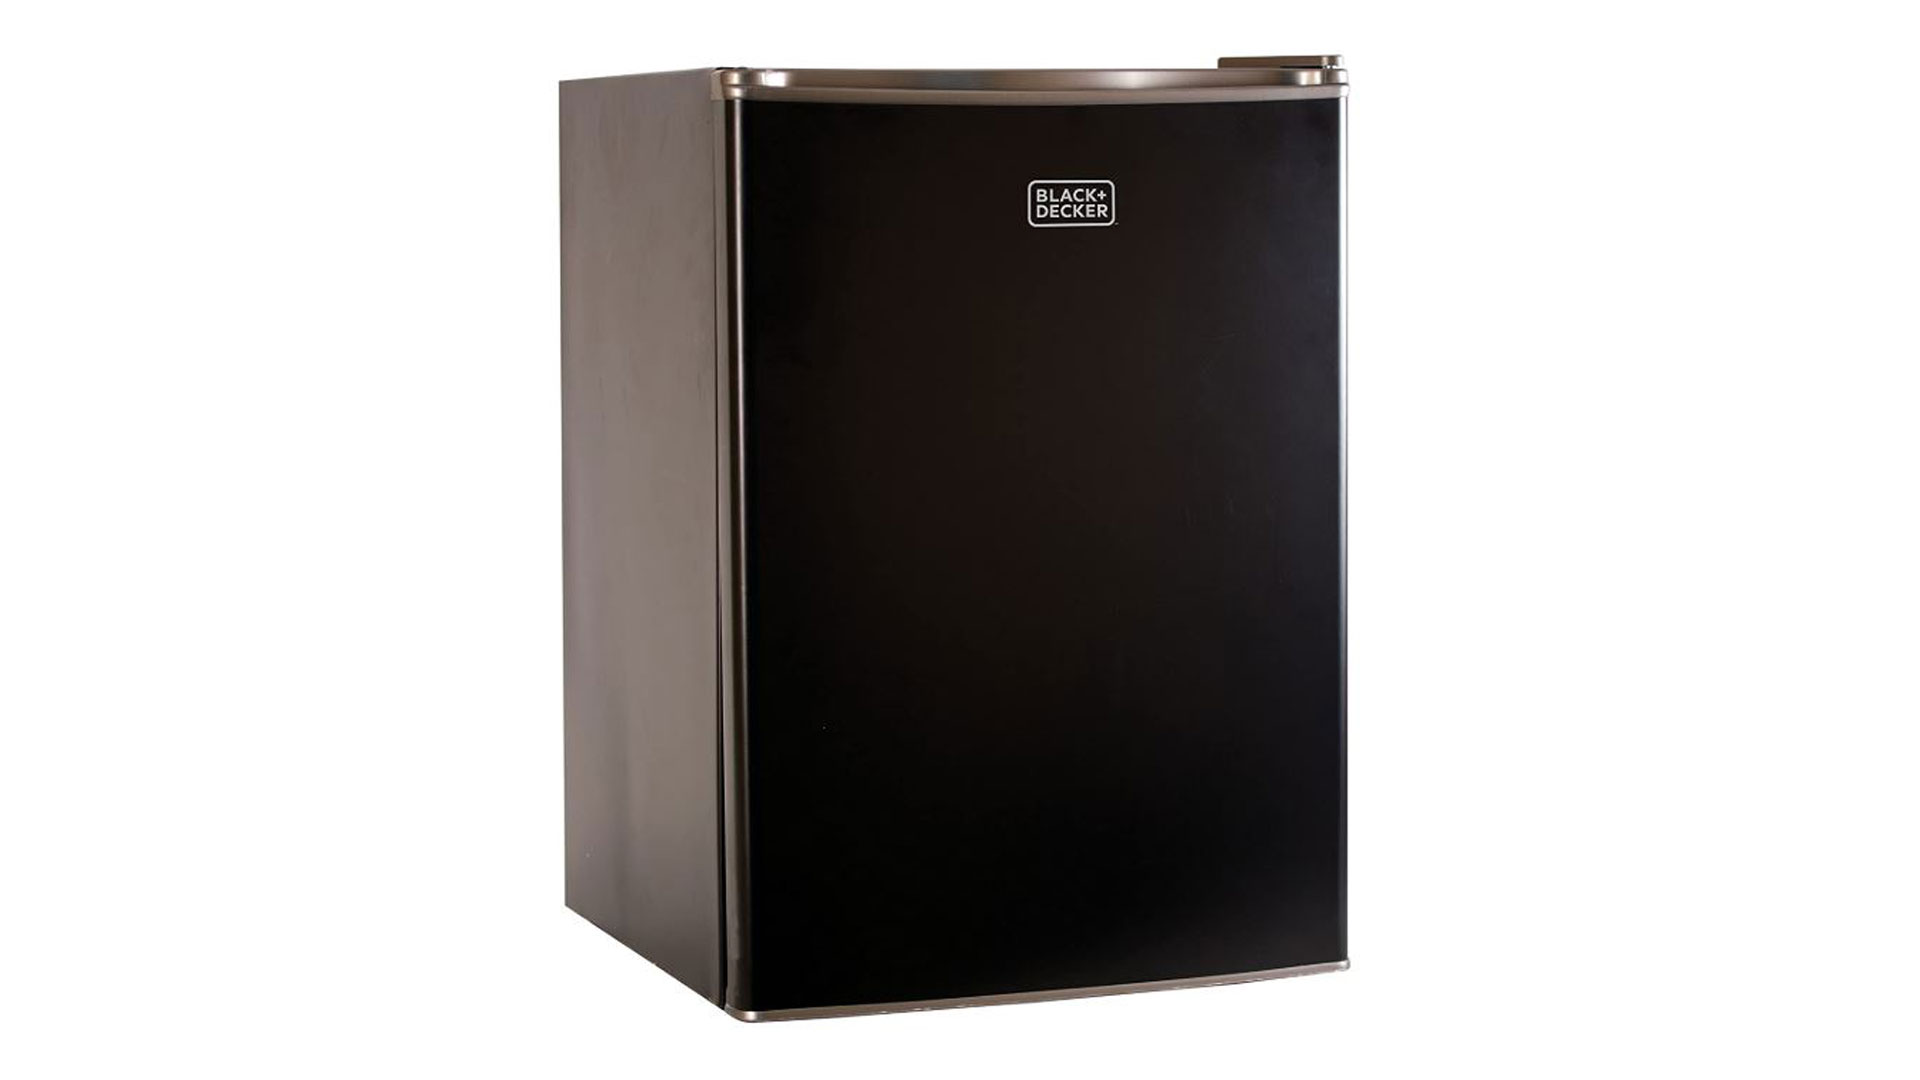 Black & Decker BCRK25W mini fridge review